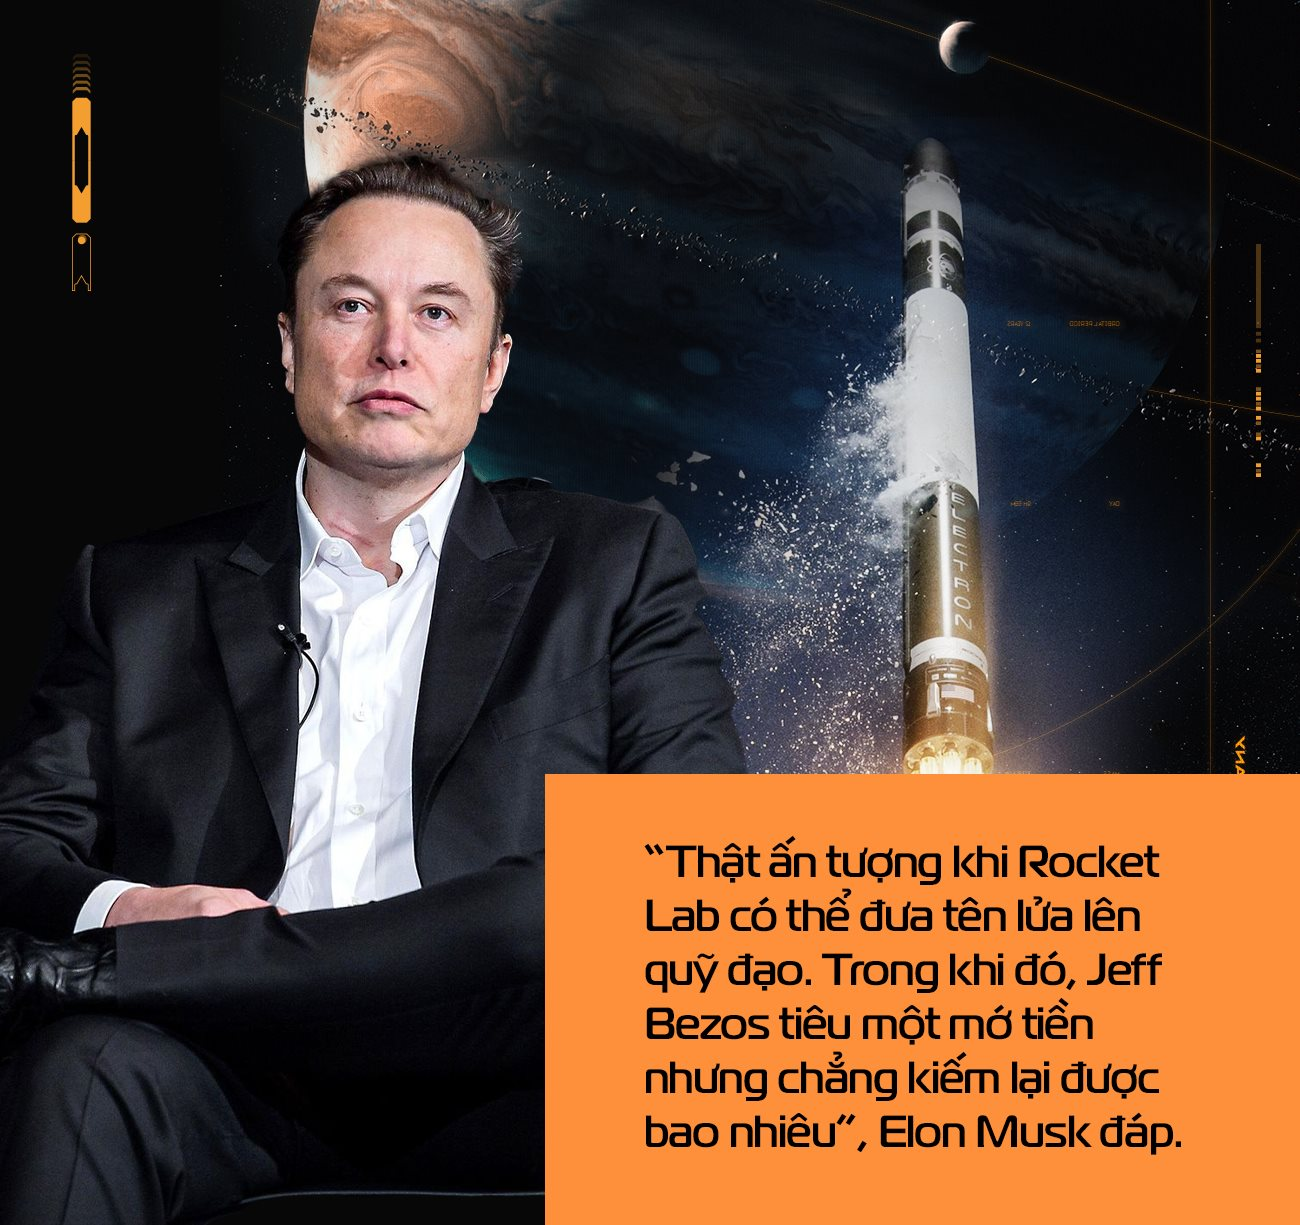 Chàng thợ máy rửa bát không bằng đại học khiến Elon Musk, Jeff Bezos trầm trồ: Tạo ra tên lửa nhẹ hơn, rẻ hơn SpaceX, sẵn sàng bay vào vũ trụ bất cứ lúc nào - Ảnh 2.